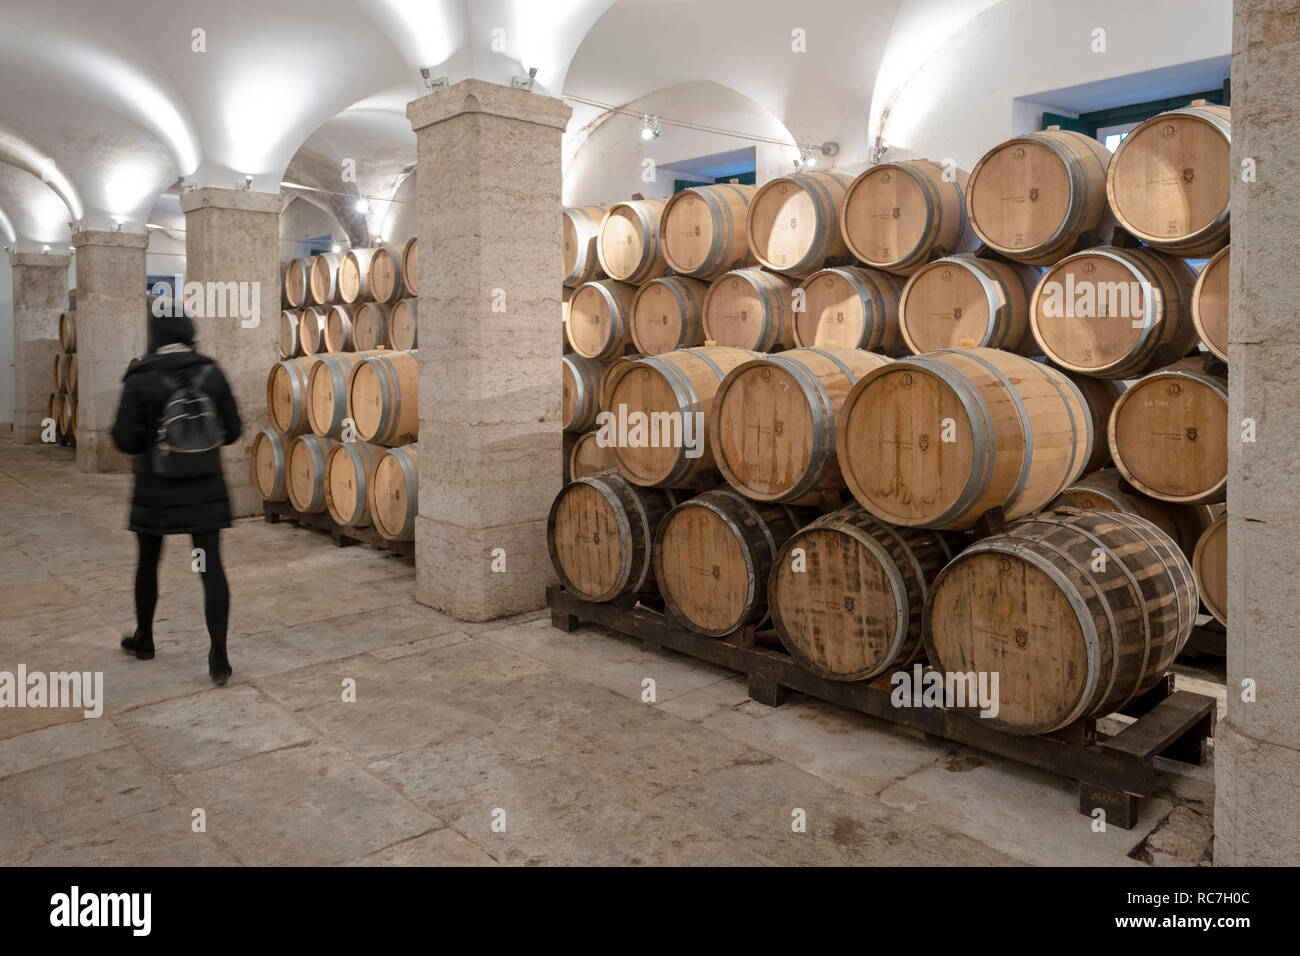 Alterung von Wein in Fässer im Keller des Marques de Pombal Palace - Palácio do Marquês de Pombal, Oeiras, Portugal, Europa Stockfoto